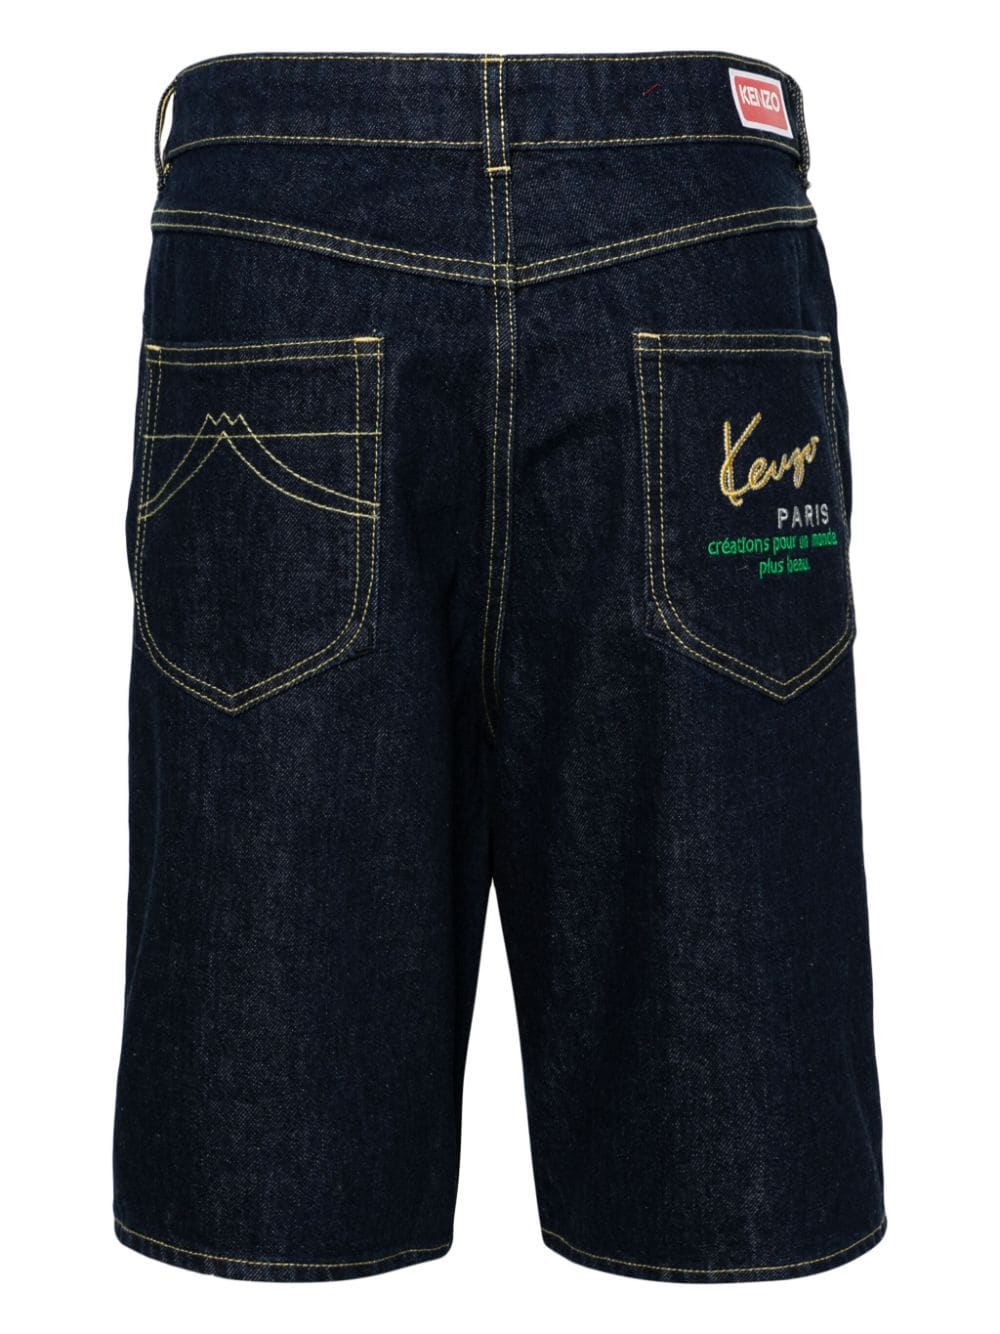 Kenzo Paris Créations denim shorts - Blauw